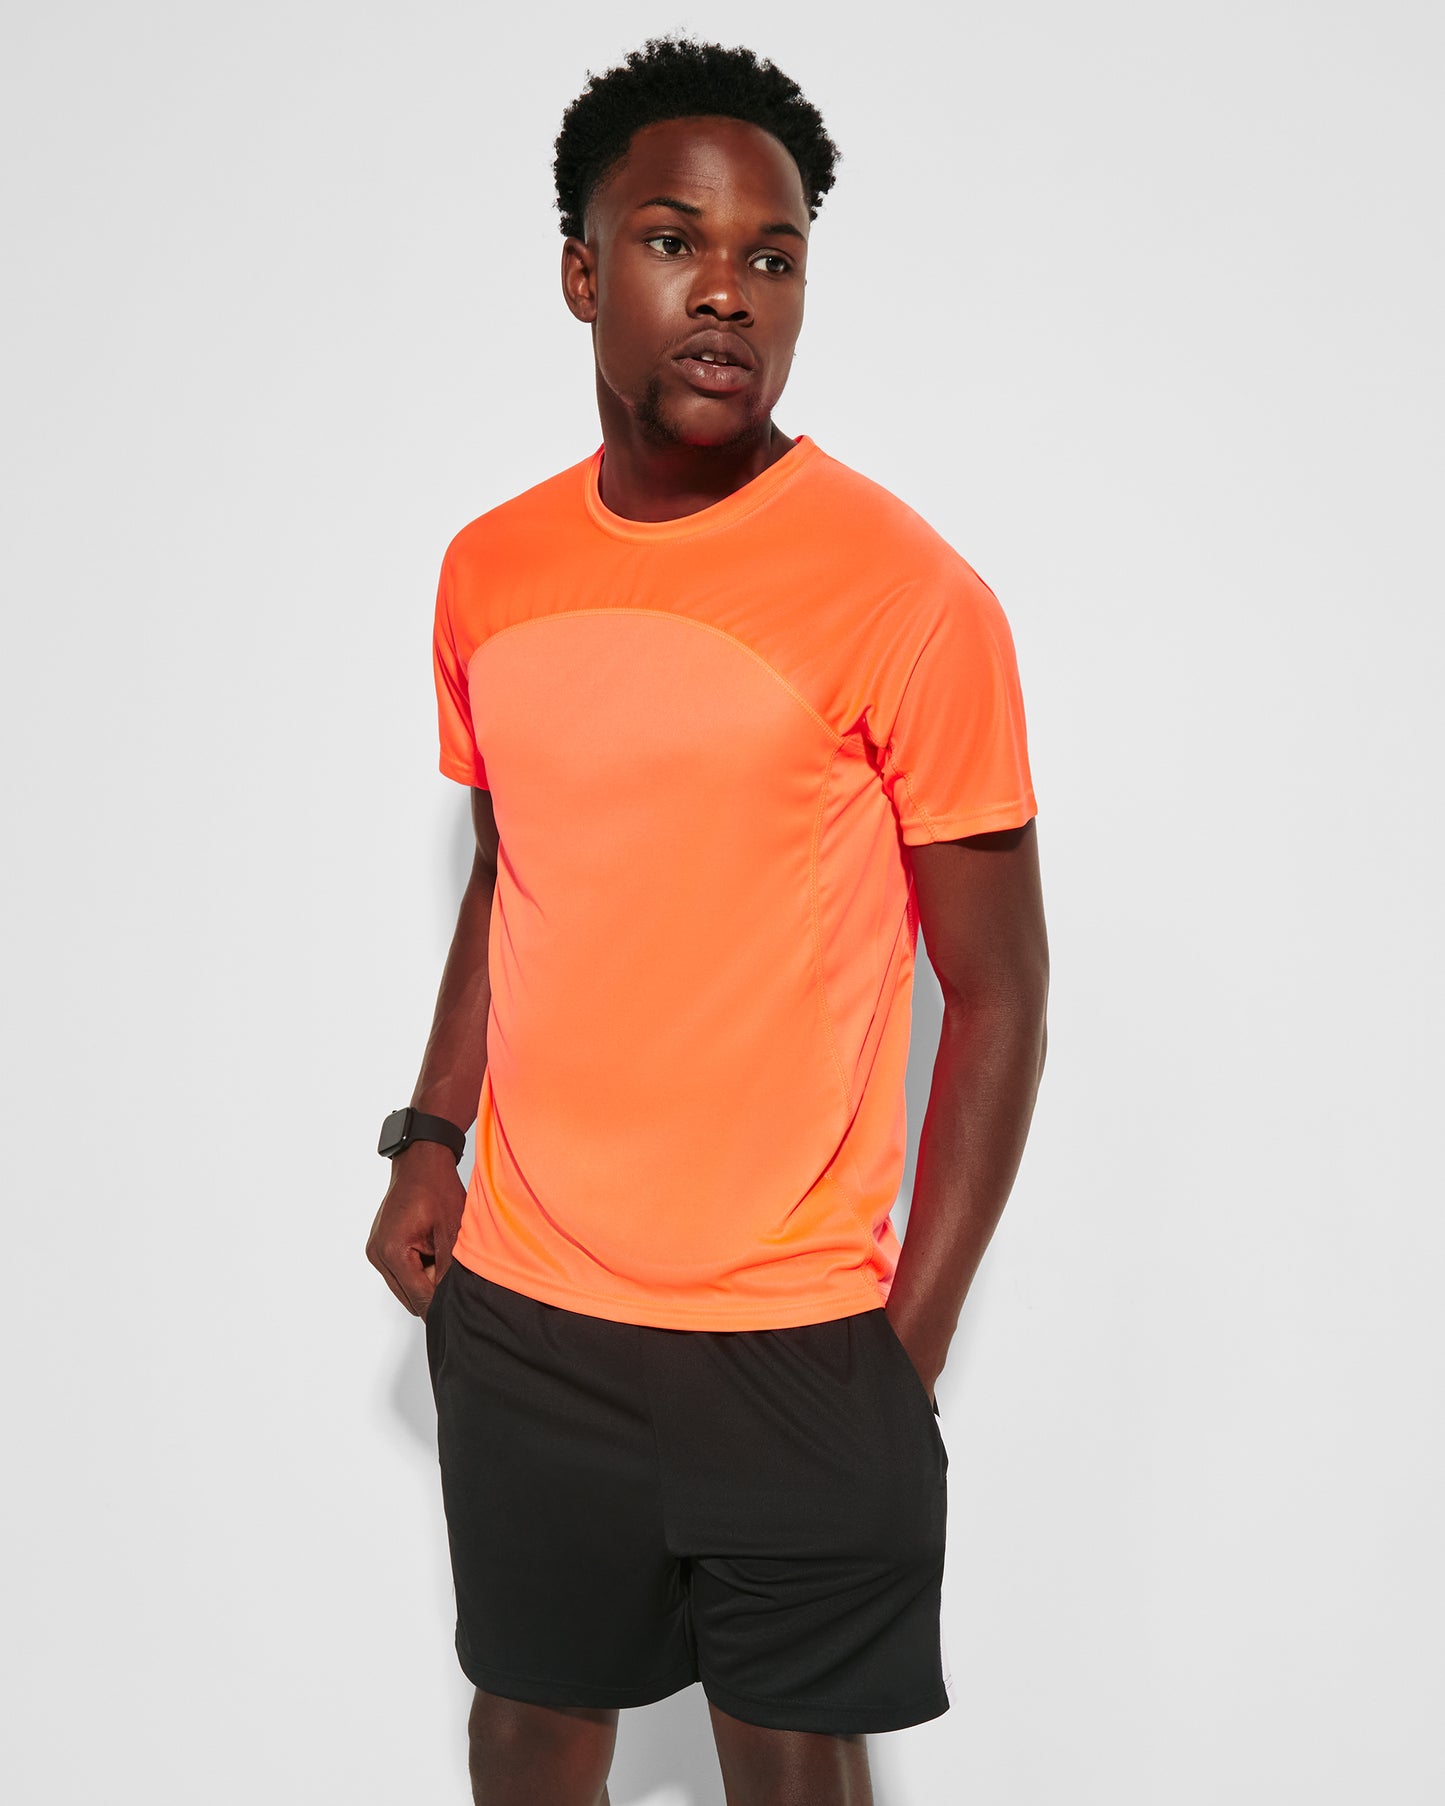 Camiseta deportiva ranglán unisex - Hombre - Mónaco